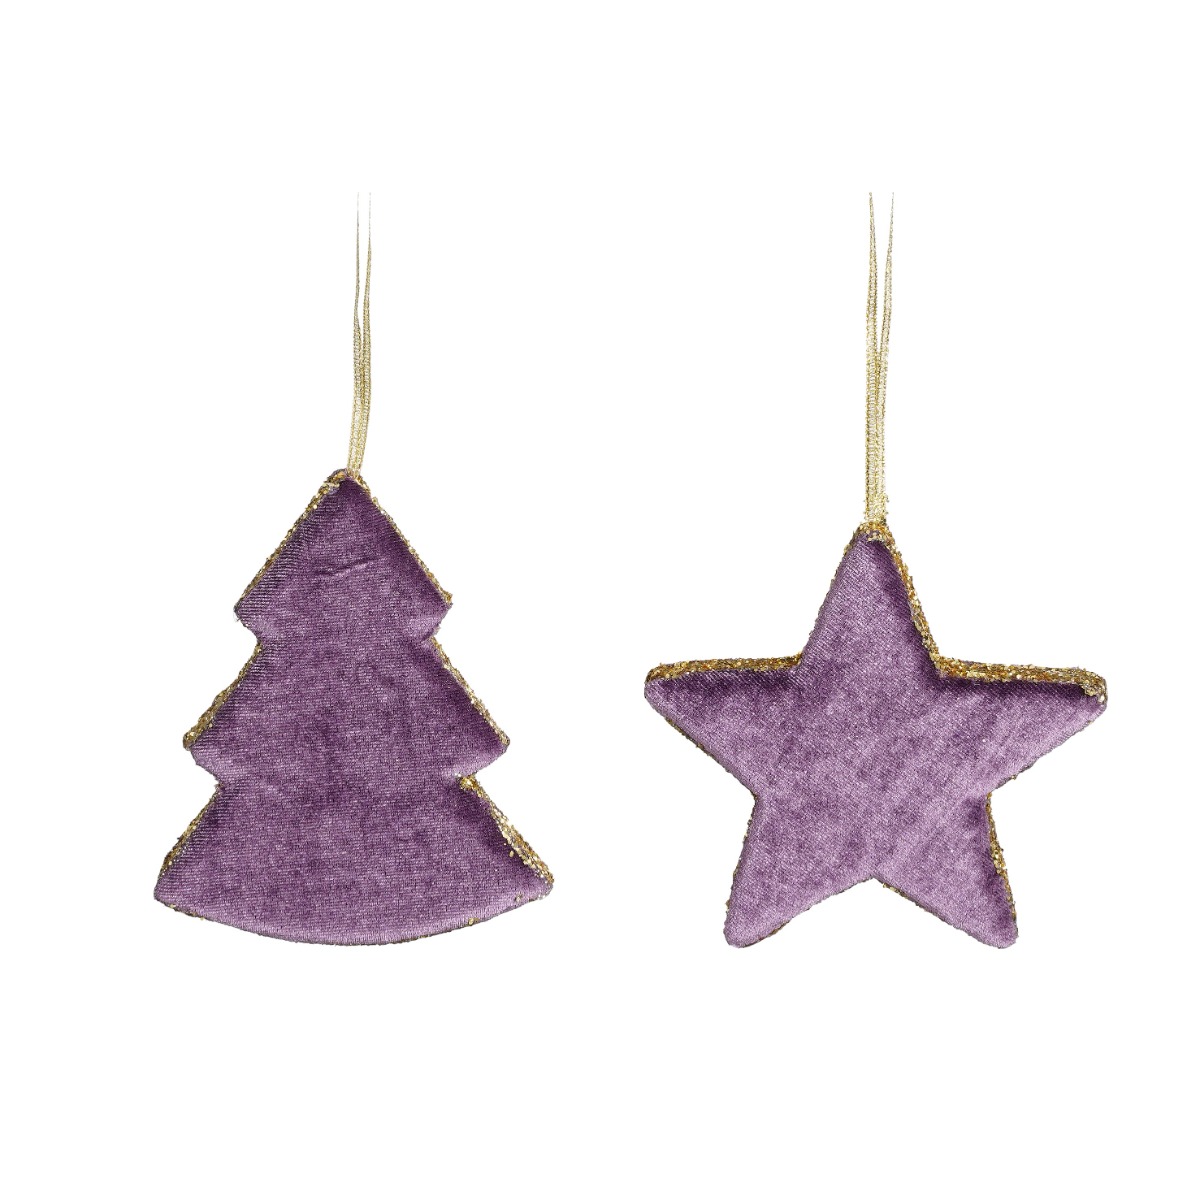 Juletræ eller stjerne lyslilla med guldfarvet kant -Stjerne